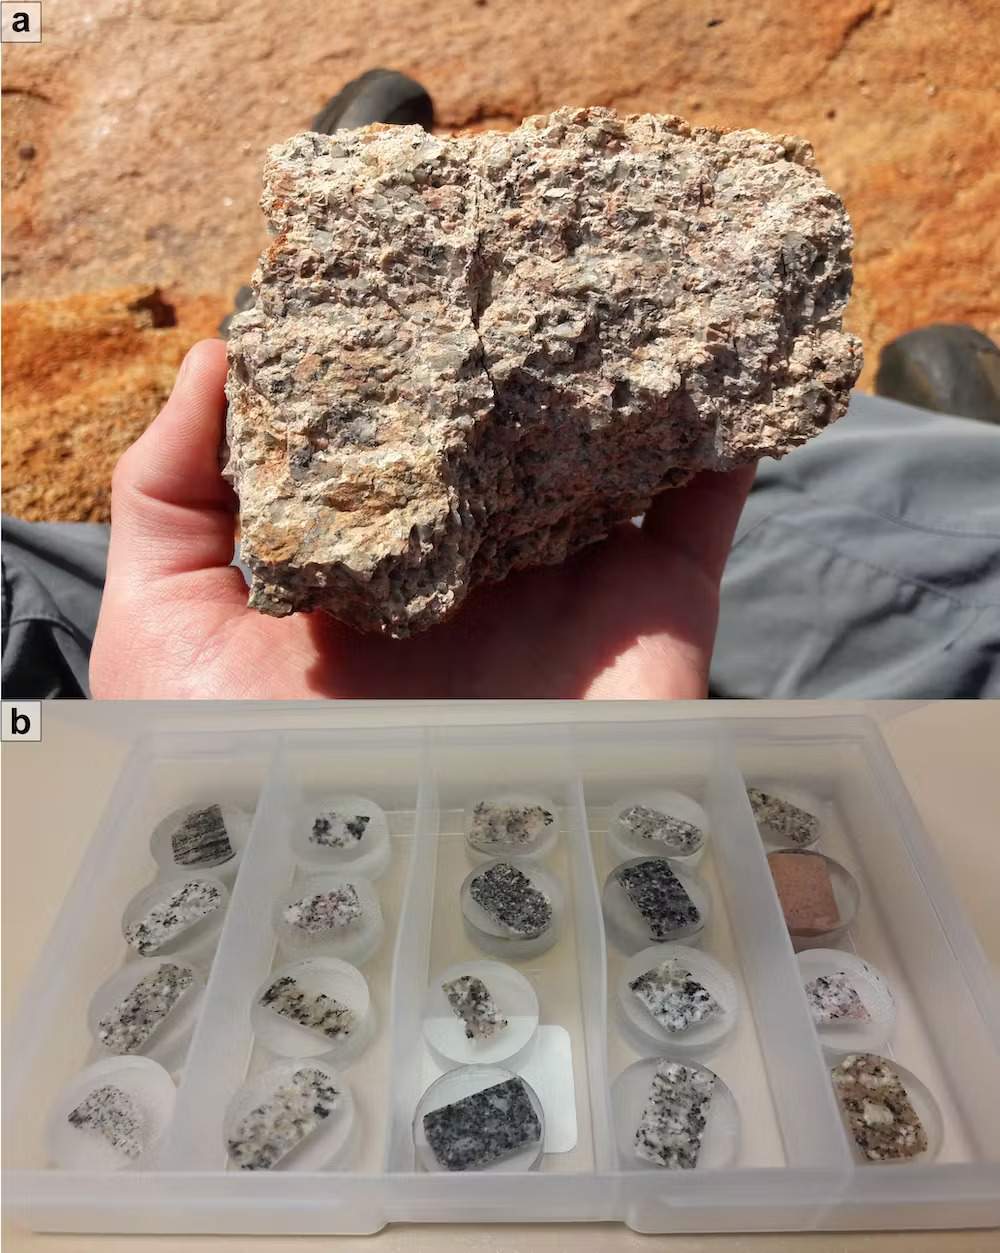 (a) Granito prelevato presso la struttura di Yarrabubba. (b) Esempi di campioni di roccia da analizzare per definire la composizione isotopica. I grani rosa nel granito sono tipicamente feldspati che contengono piombo ma non uranio e possono essere utilizzati per le analisi isotopiche del piombo. Credits: Andreas Zametzer